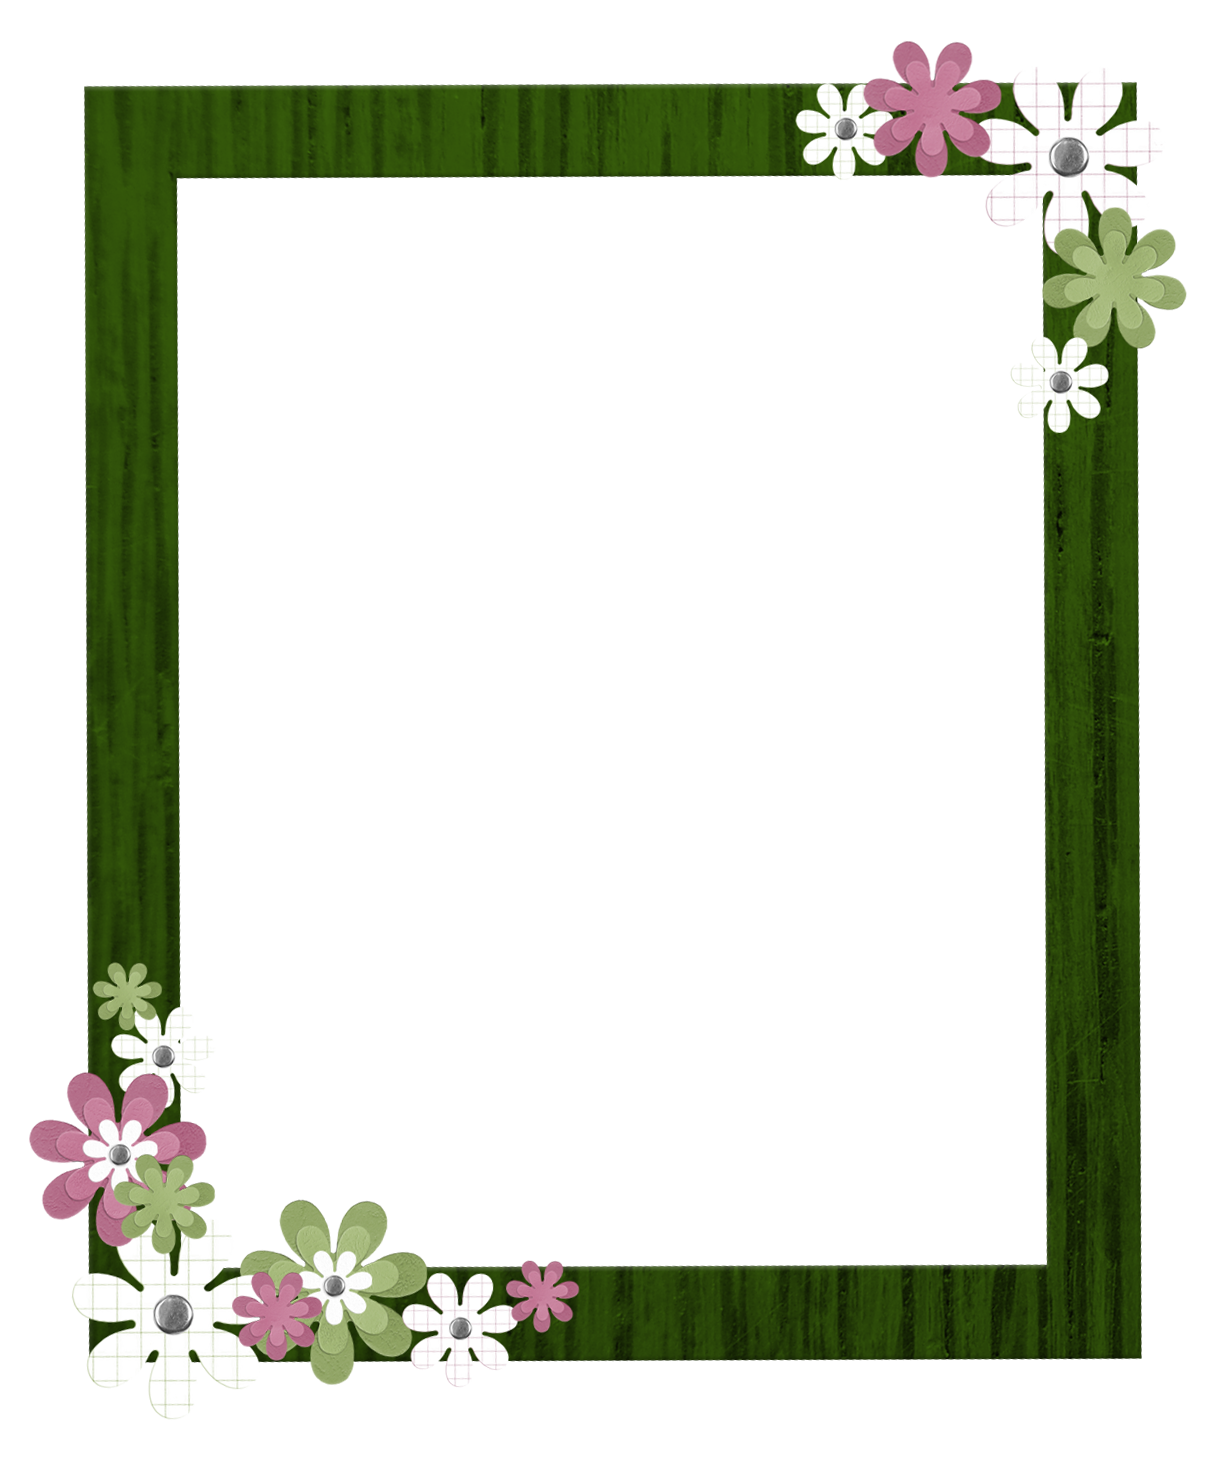 Frame Square Border Flower Download HQ PNG Image